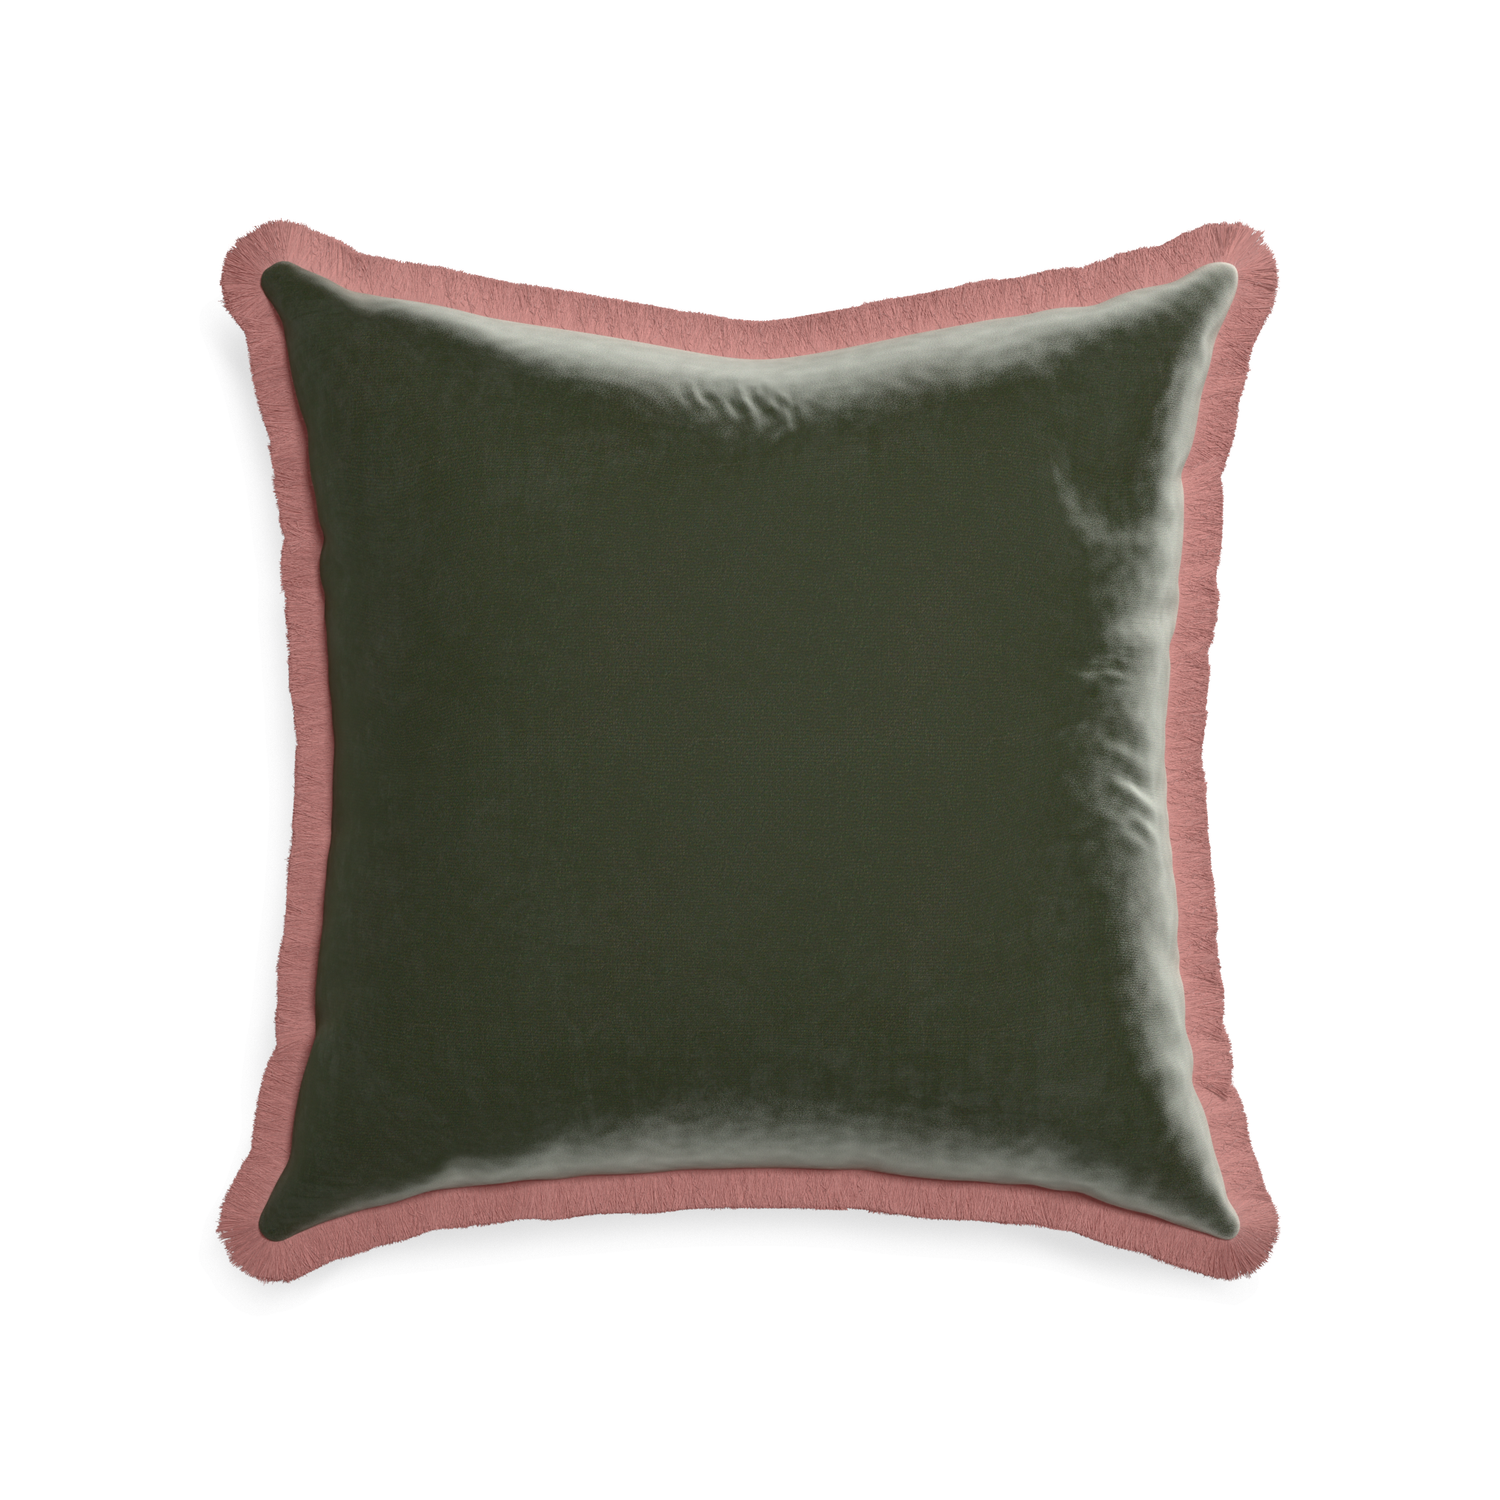 square fern green velvet pillow with dusty rose fringe